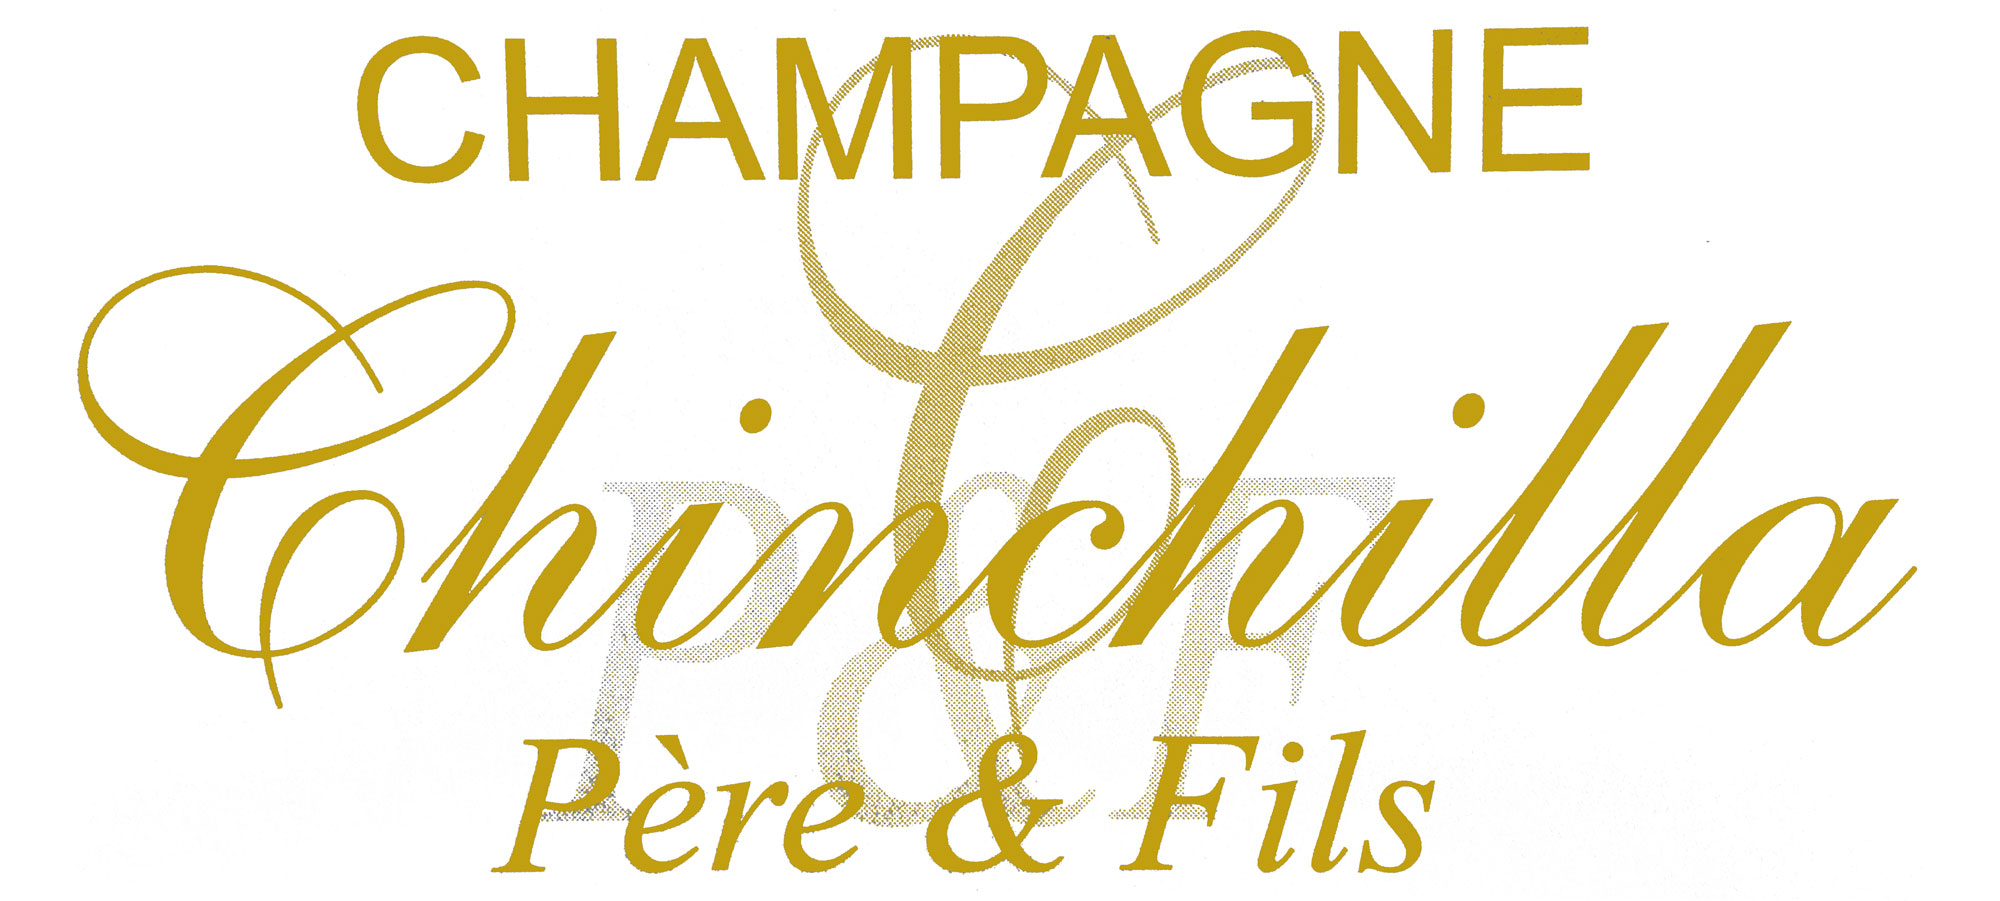  Champagne Chinchilla Pere & Fils